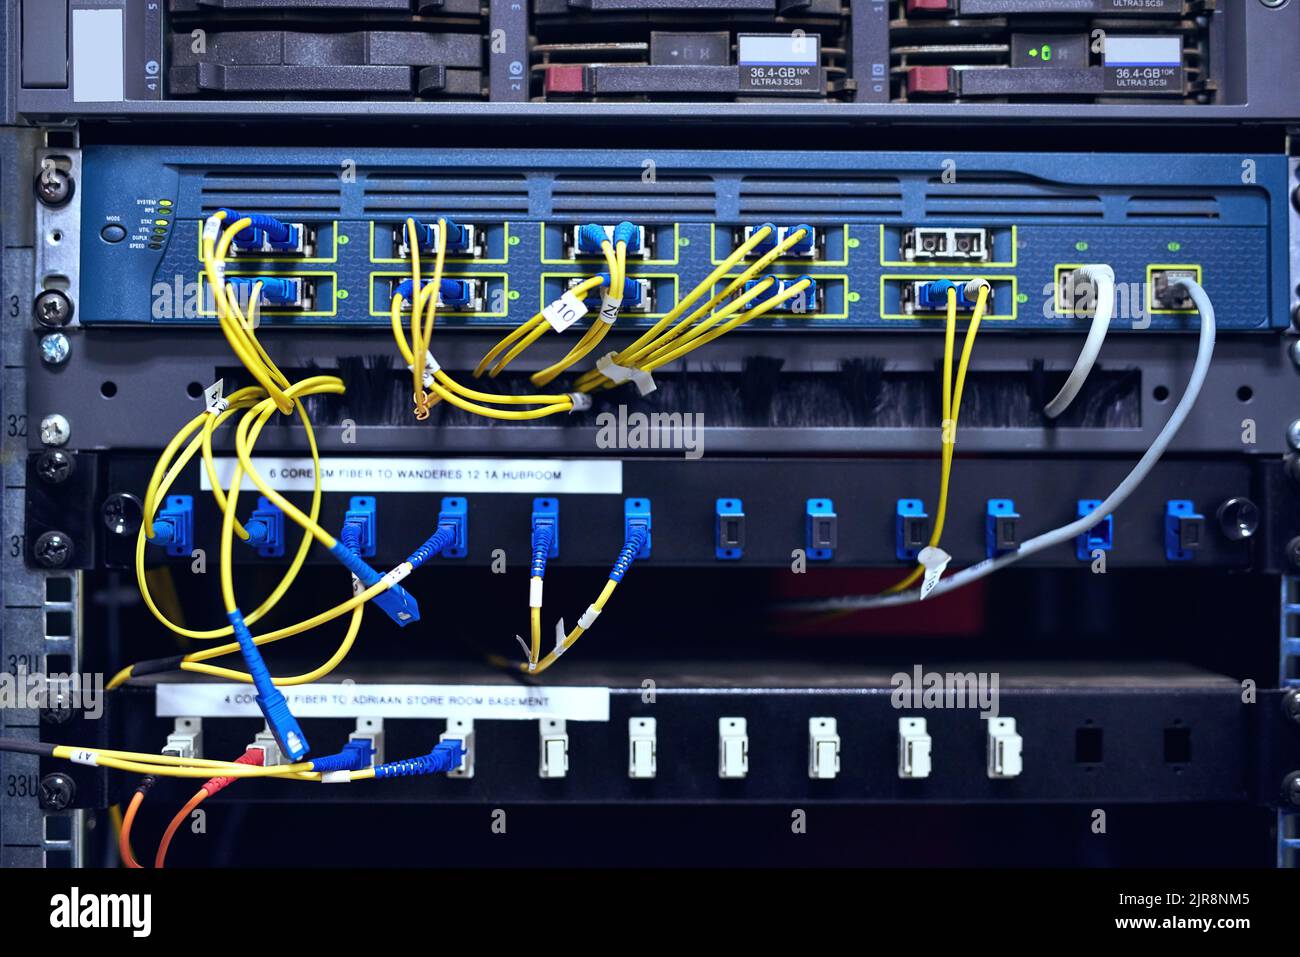 Connecter tout le monde. L'intérieur d'un ordinateur avec tout son câblage situé dans une salle de serveur. Banque D'Images